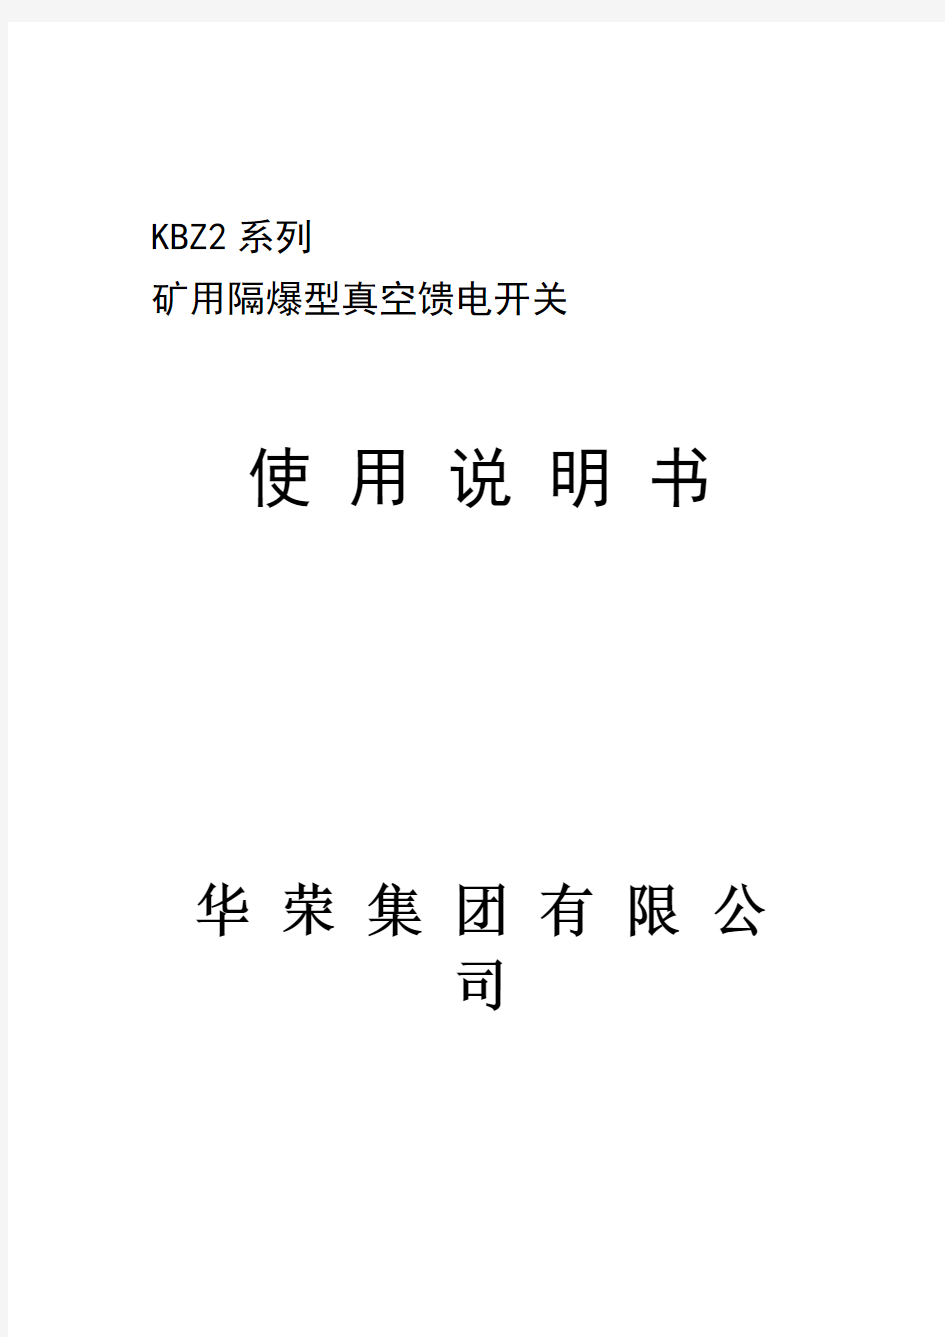 华荣KBZ2系列矿用隔爆型真空馈电开关使用说明书